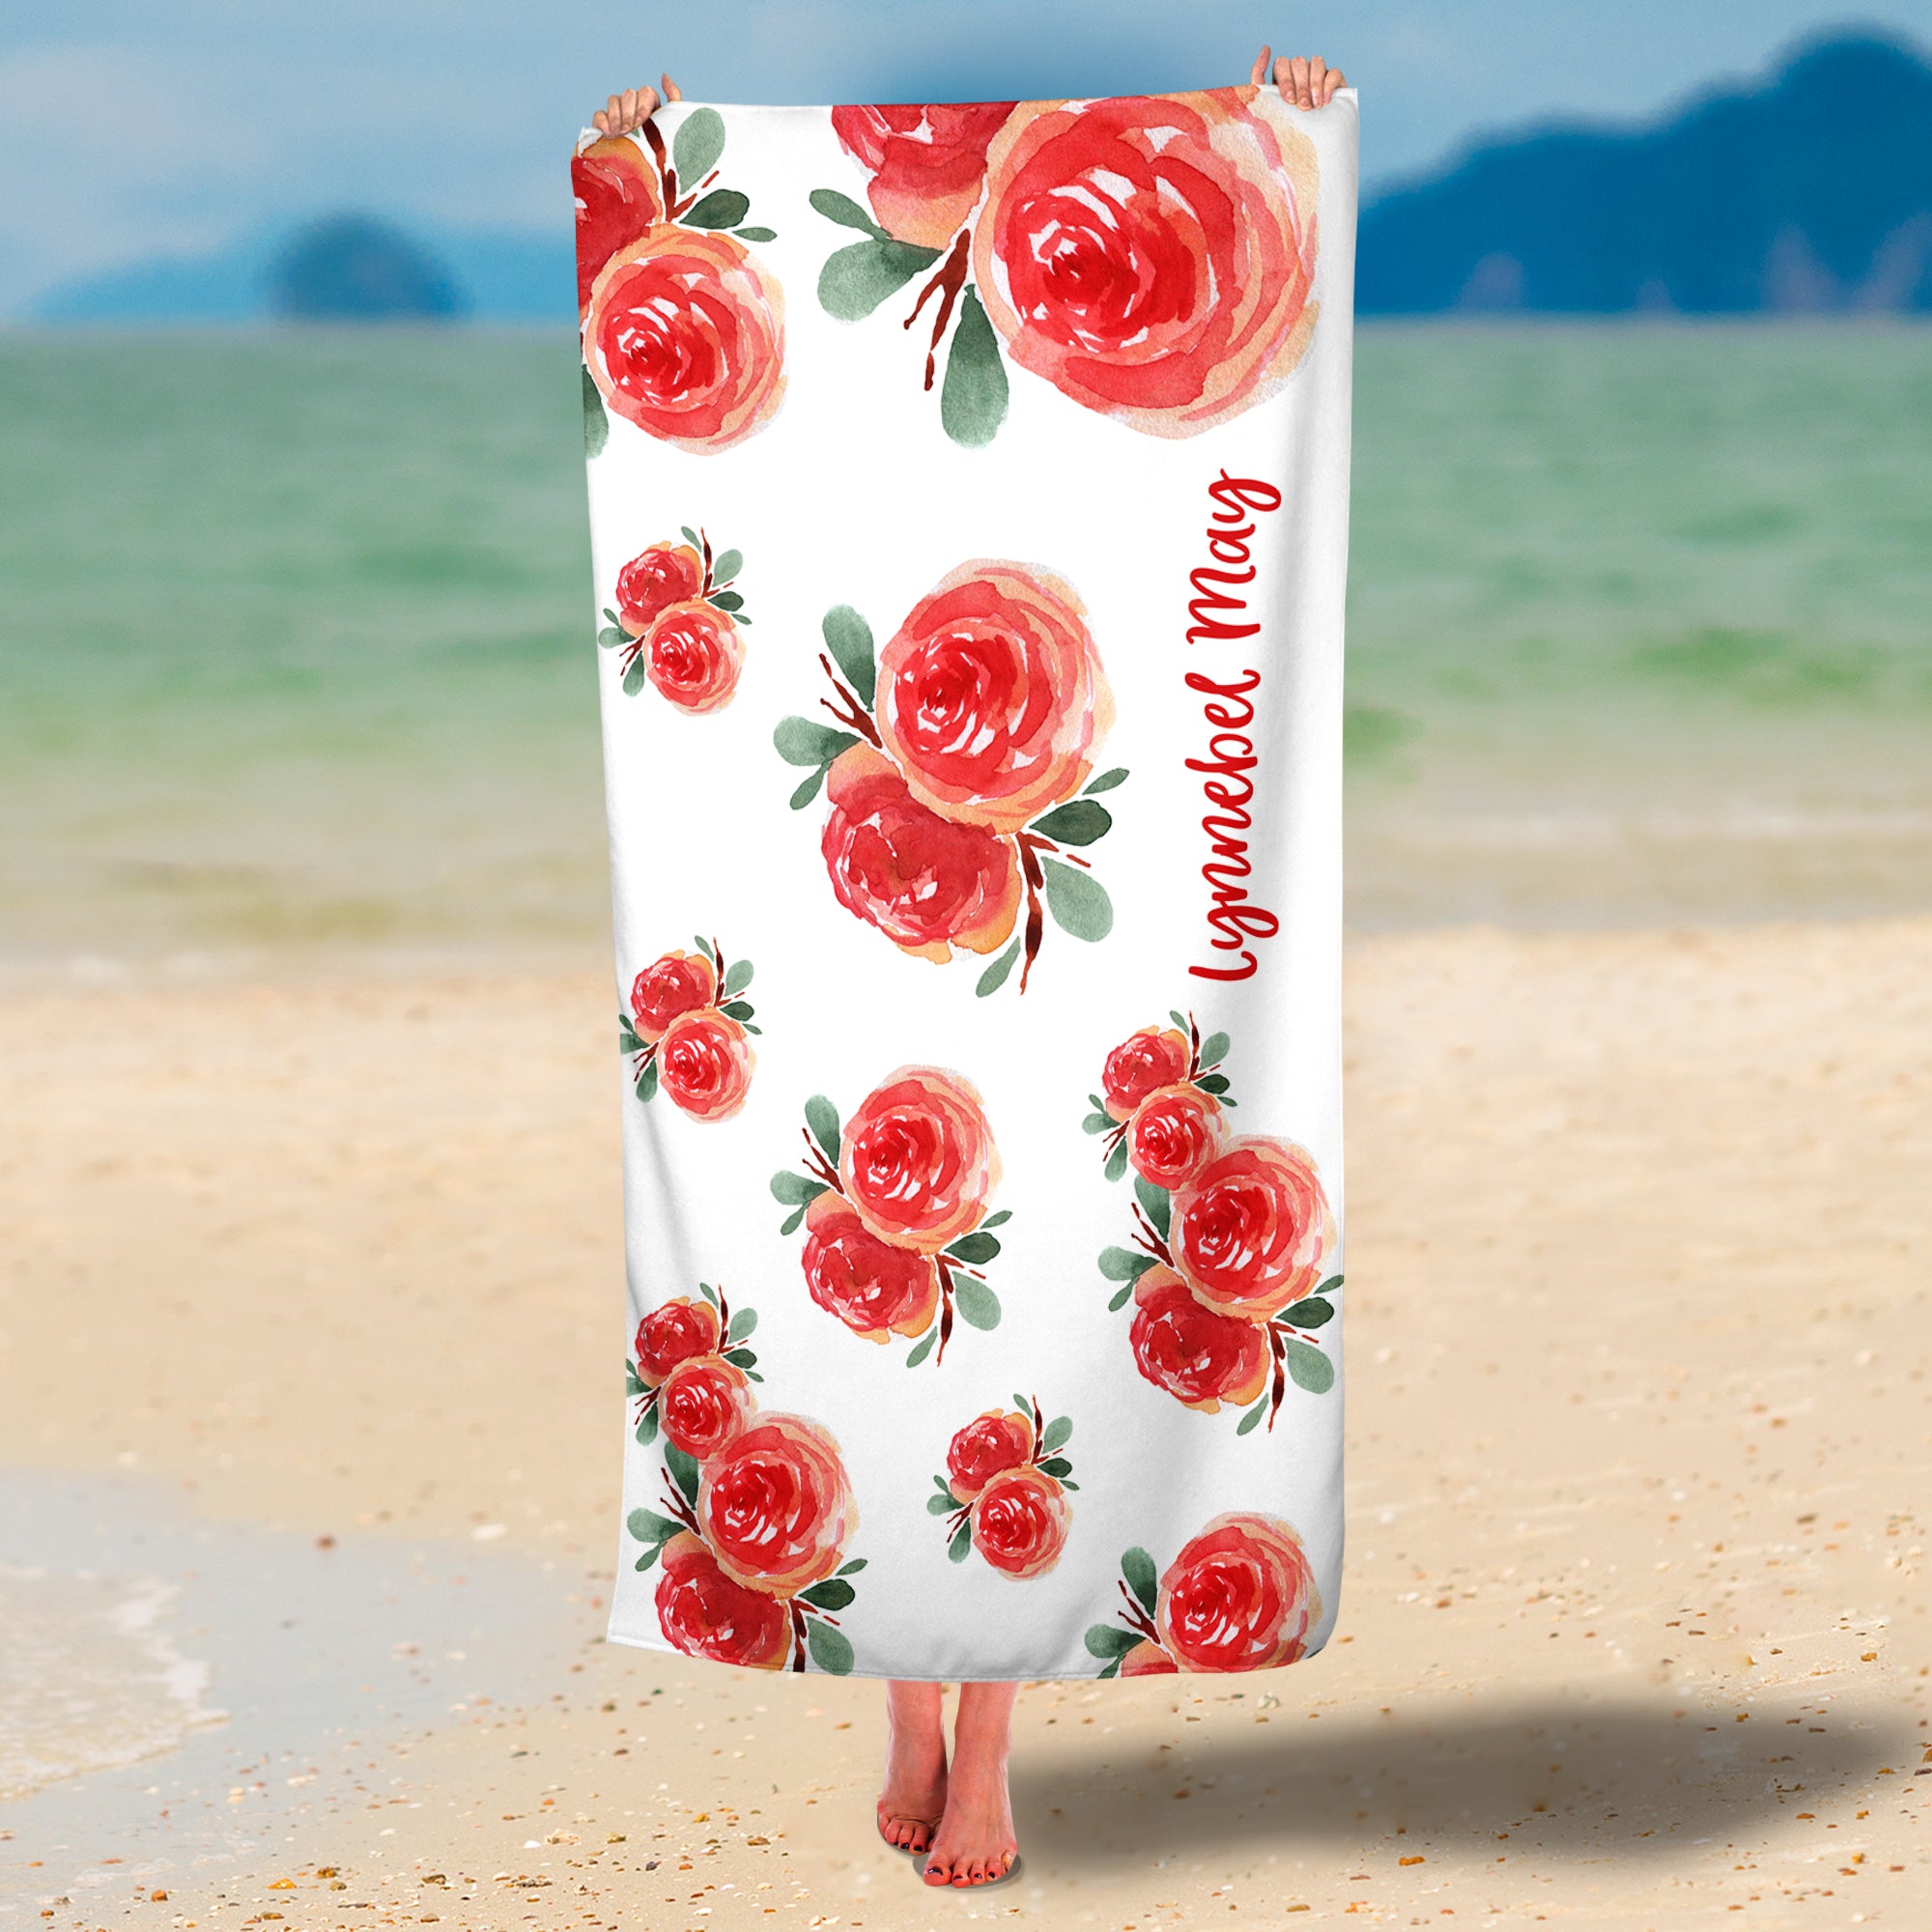 Personalized Roses Premium Beach/Pool Towel